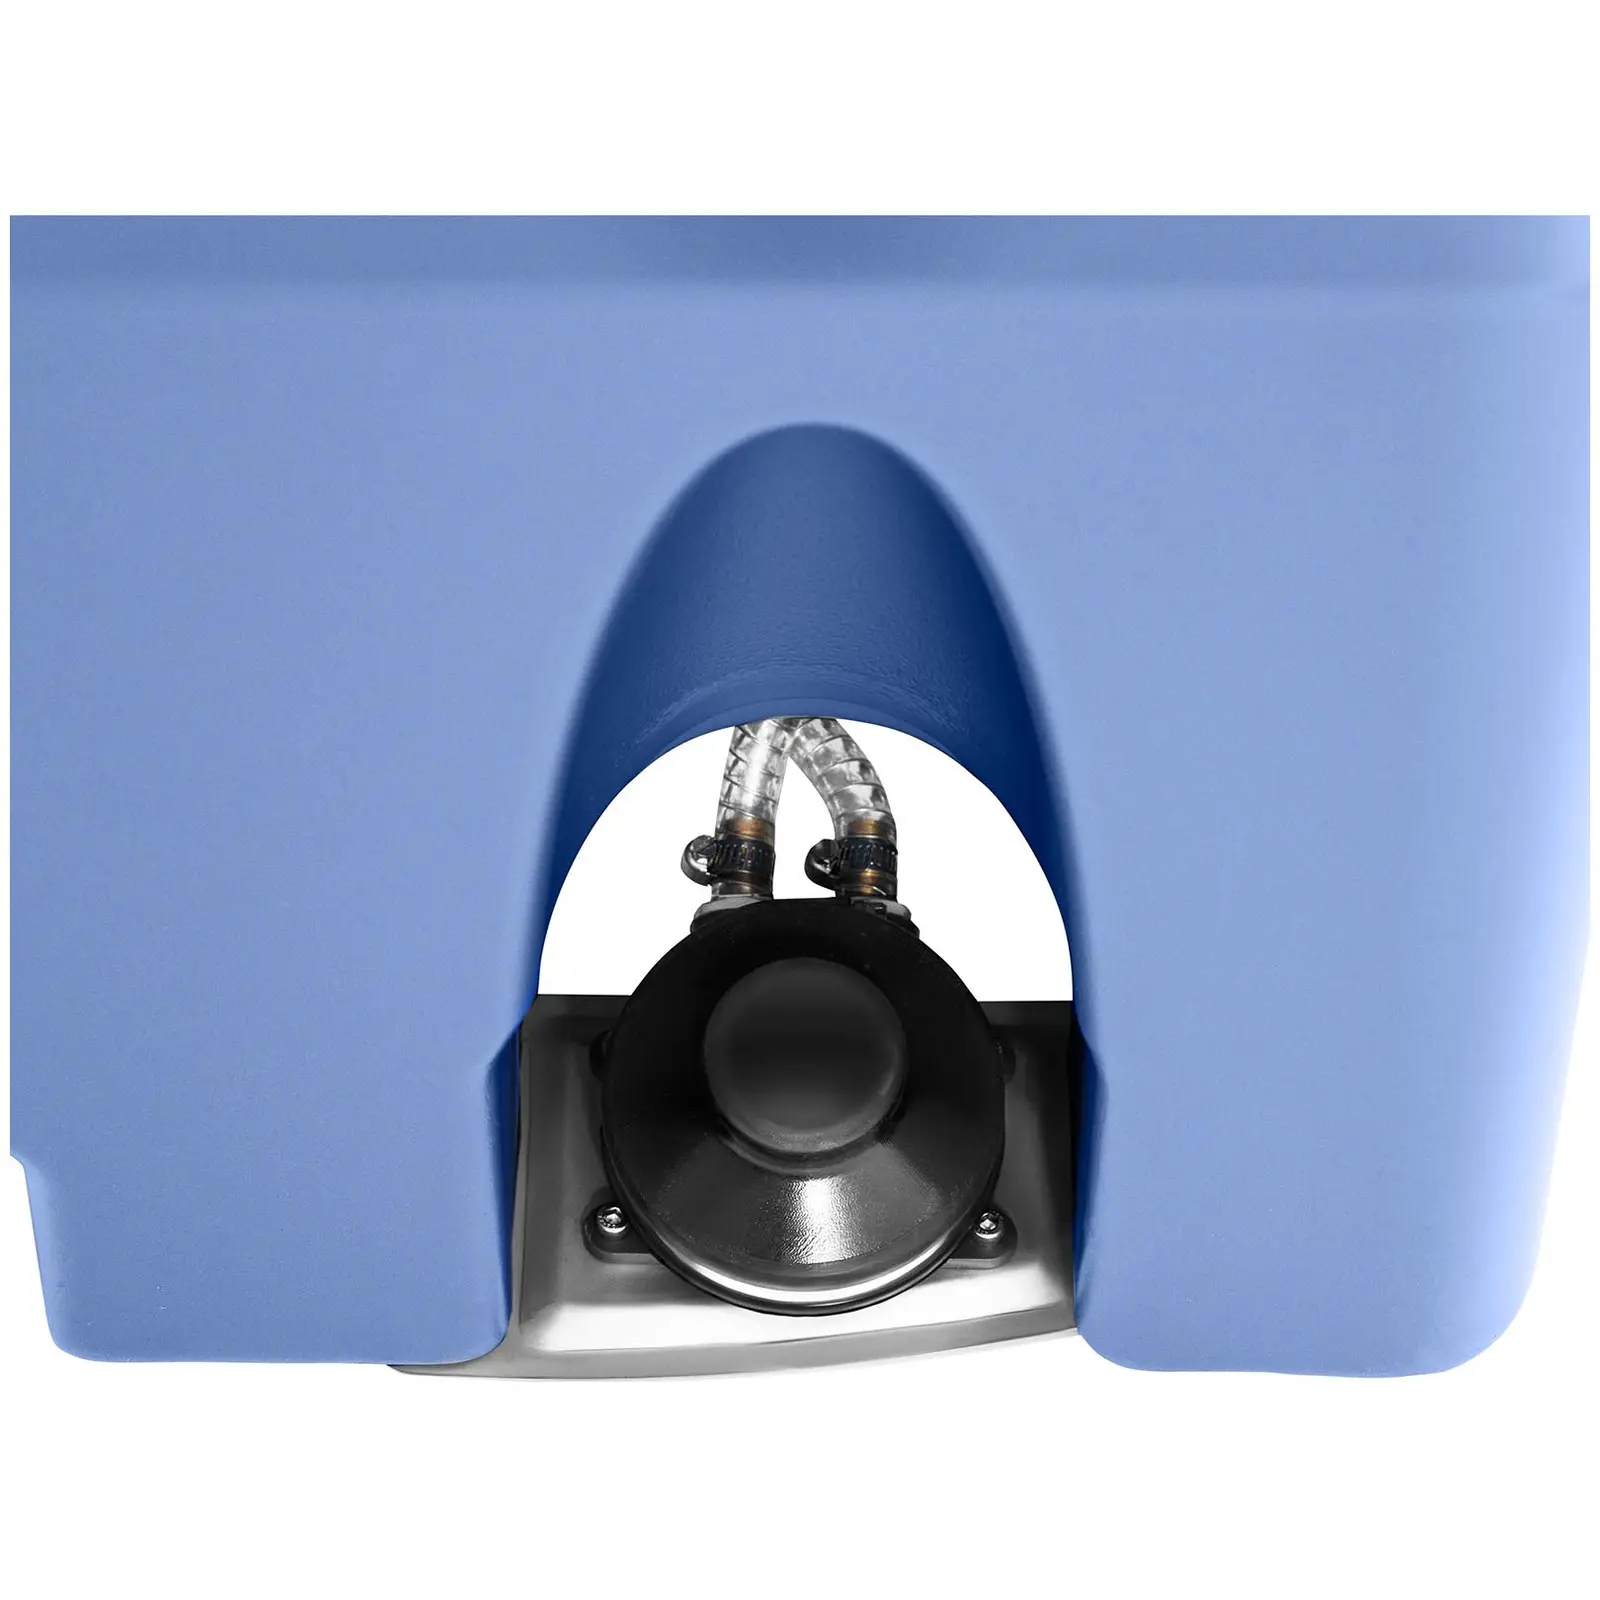 Lavandino portatile doppio con serbatoio - 130 L - Dosatore di sapone e porta-carta